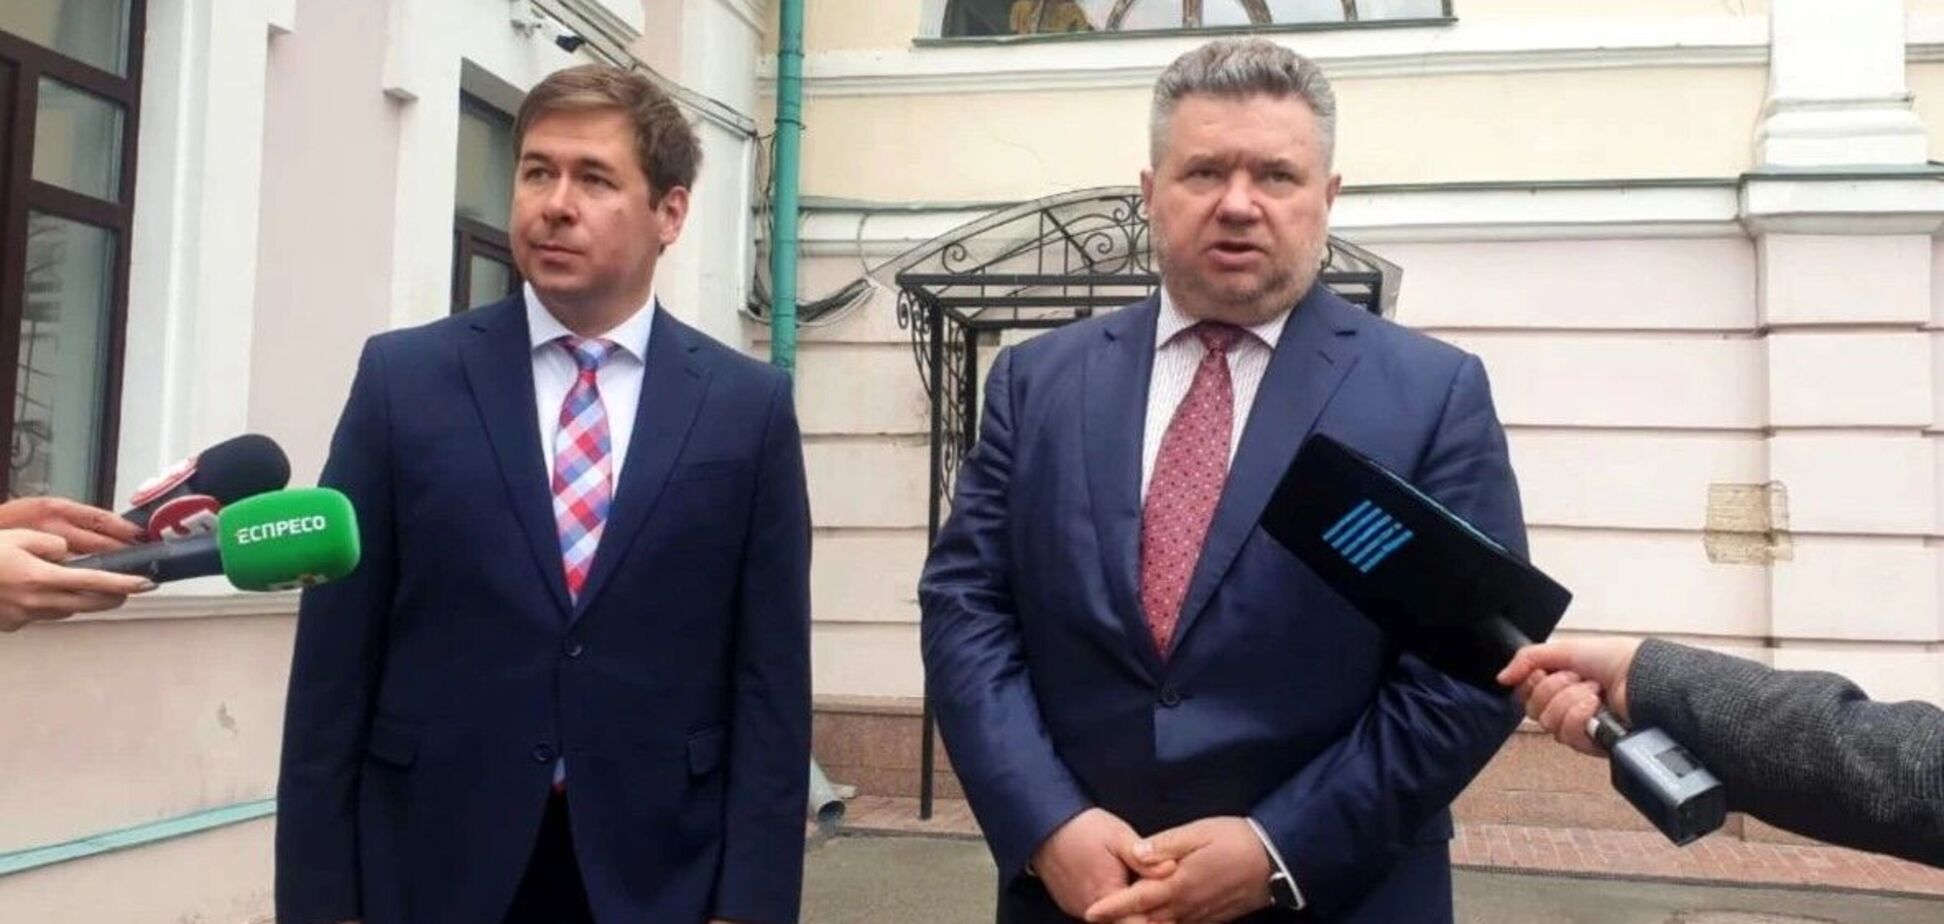 Адвокати Порошенка заявили, що не планують брати участь у 'постановочних шоу' на замовлення влади